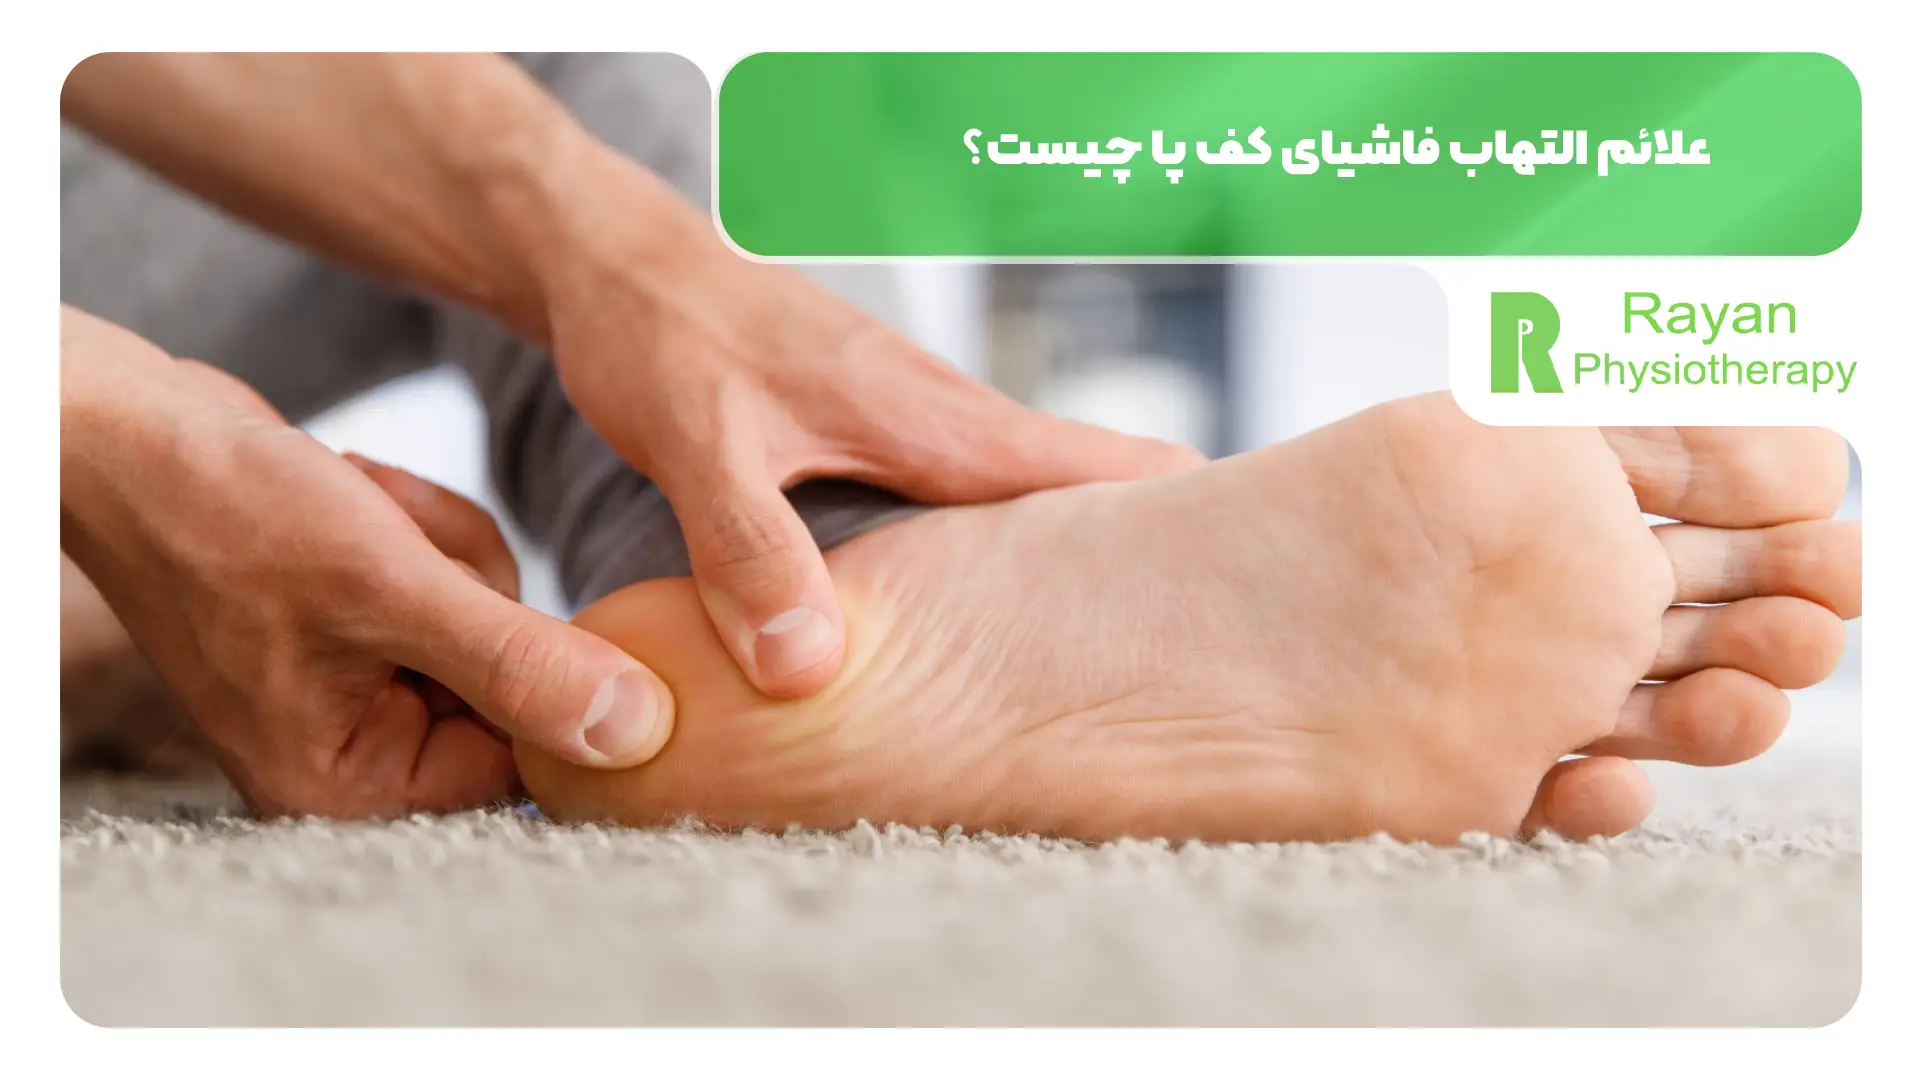 علائم التهاب فاشیای کف پا چیست؟